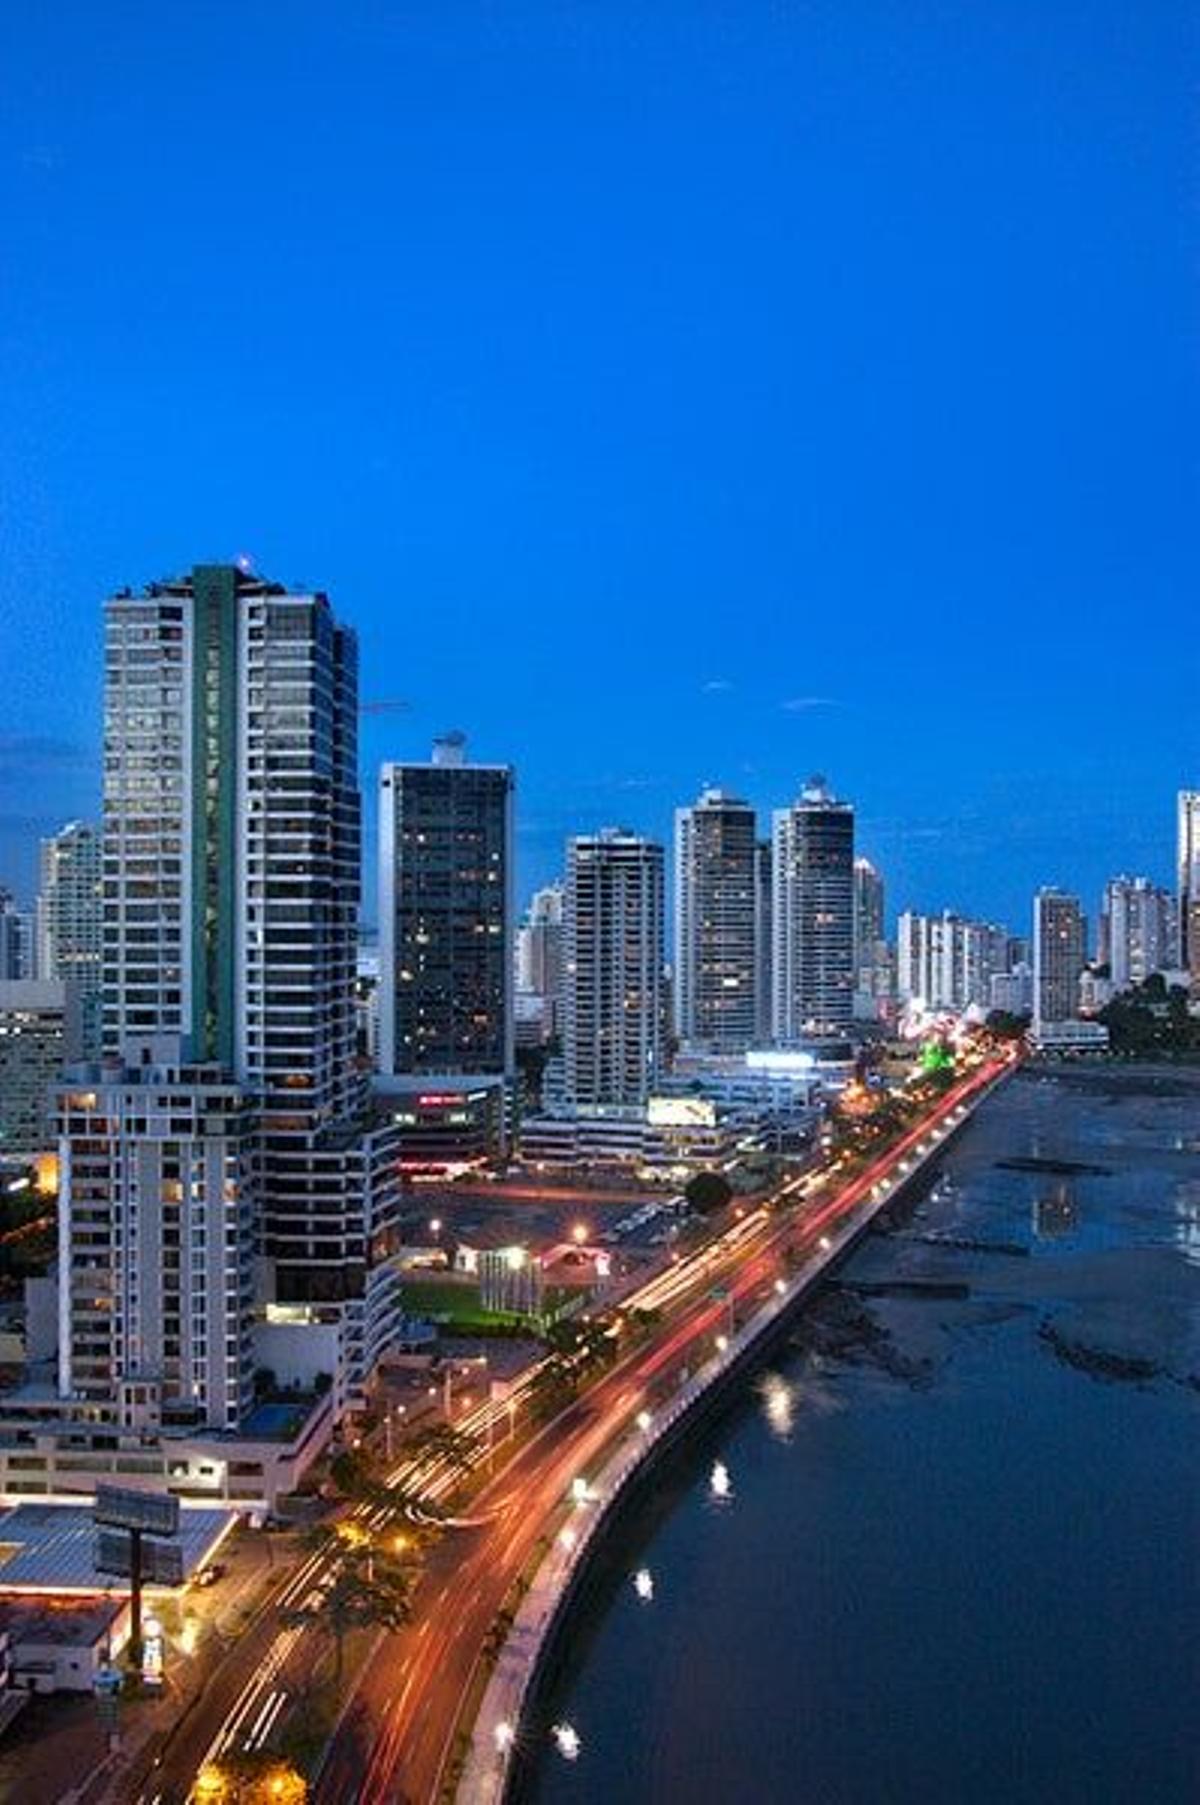 Ciudad de Panamá es una urbe de contrastes.